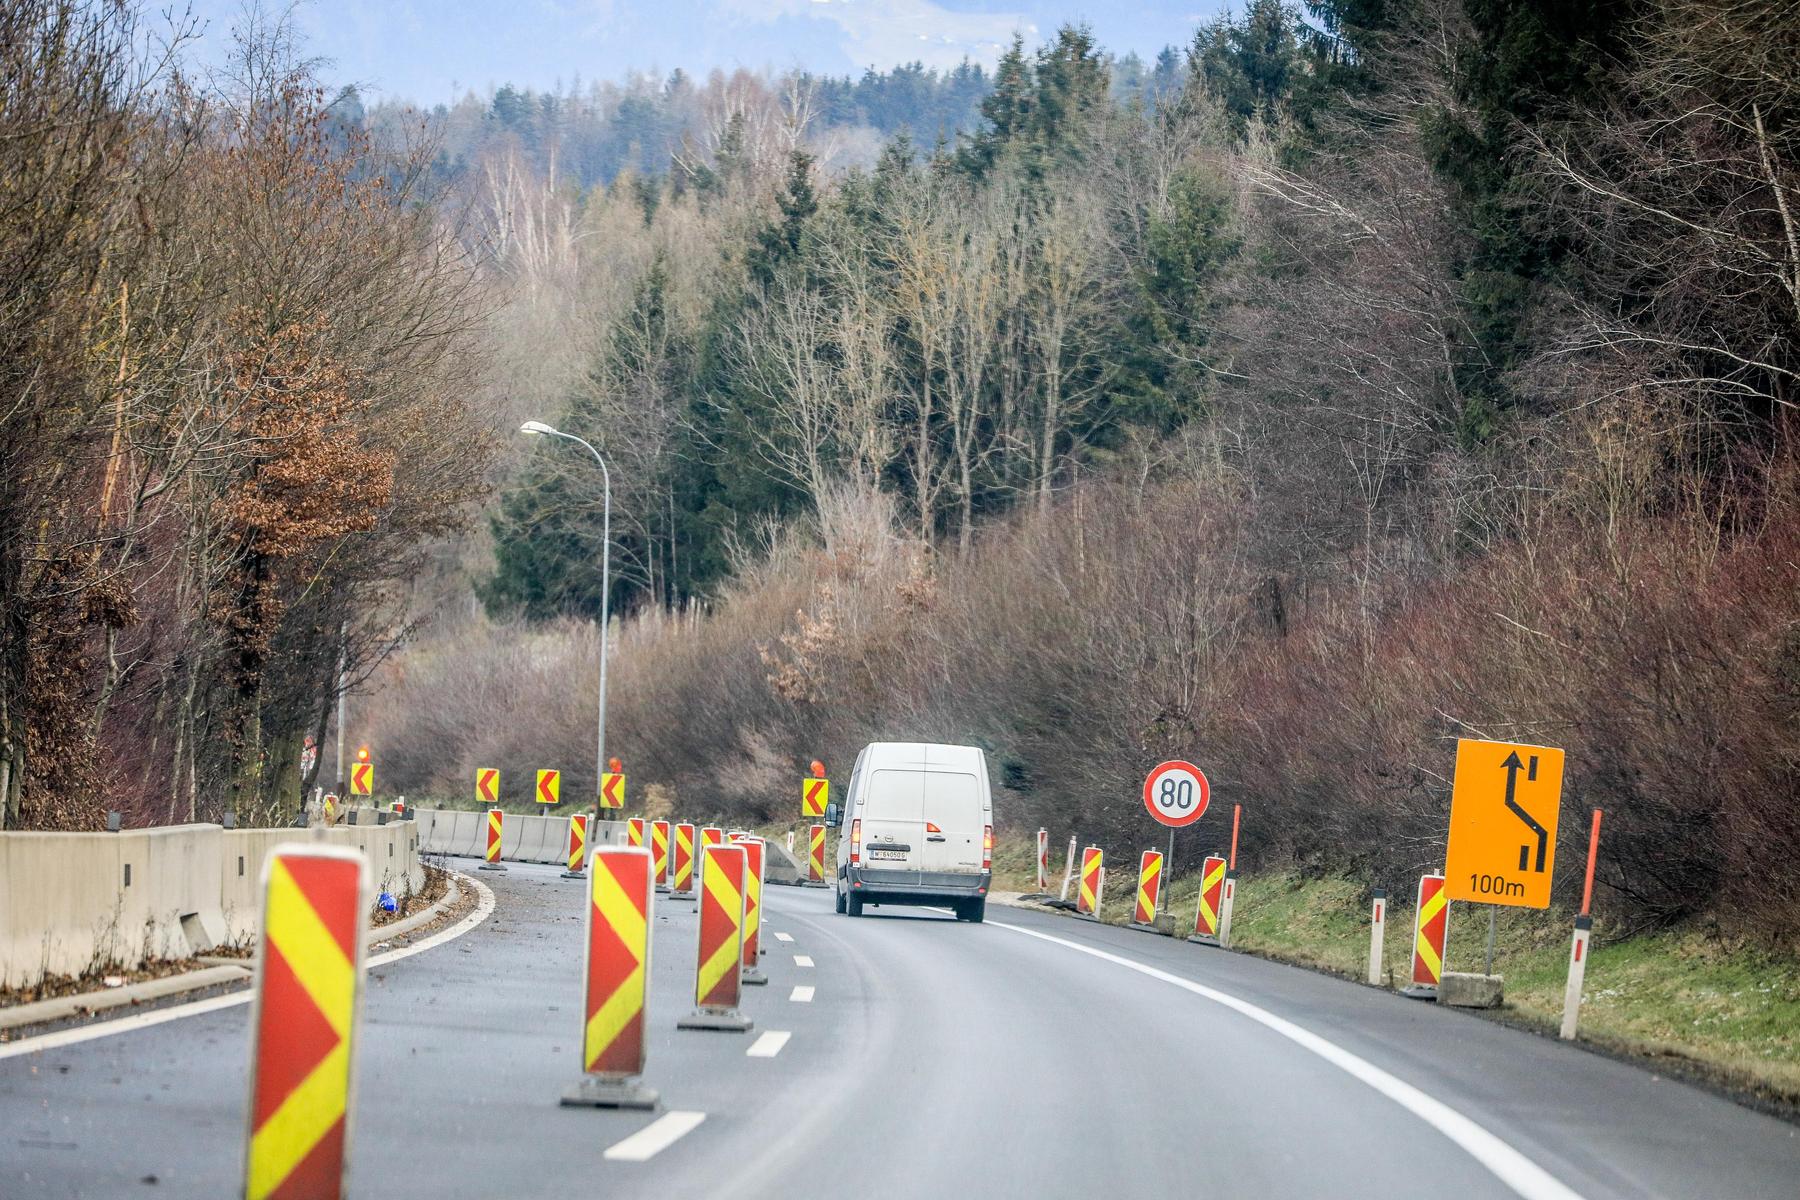 Rettungskräfte vor Ort: Verletzte nach Überschlag auf Autobahn in Kärnten - A2 gesperrt